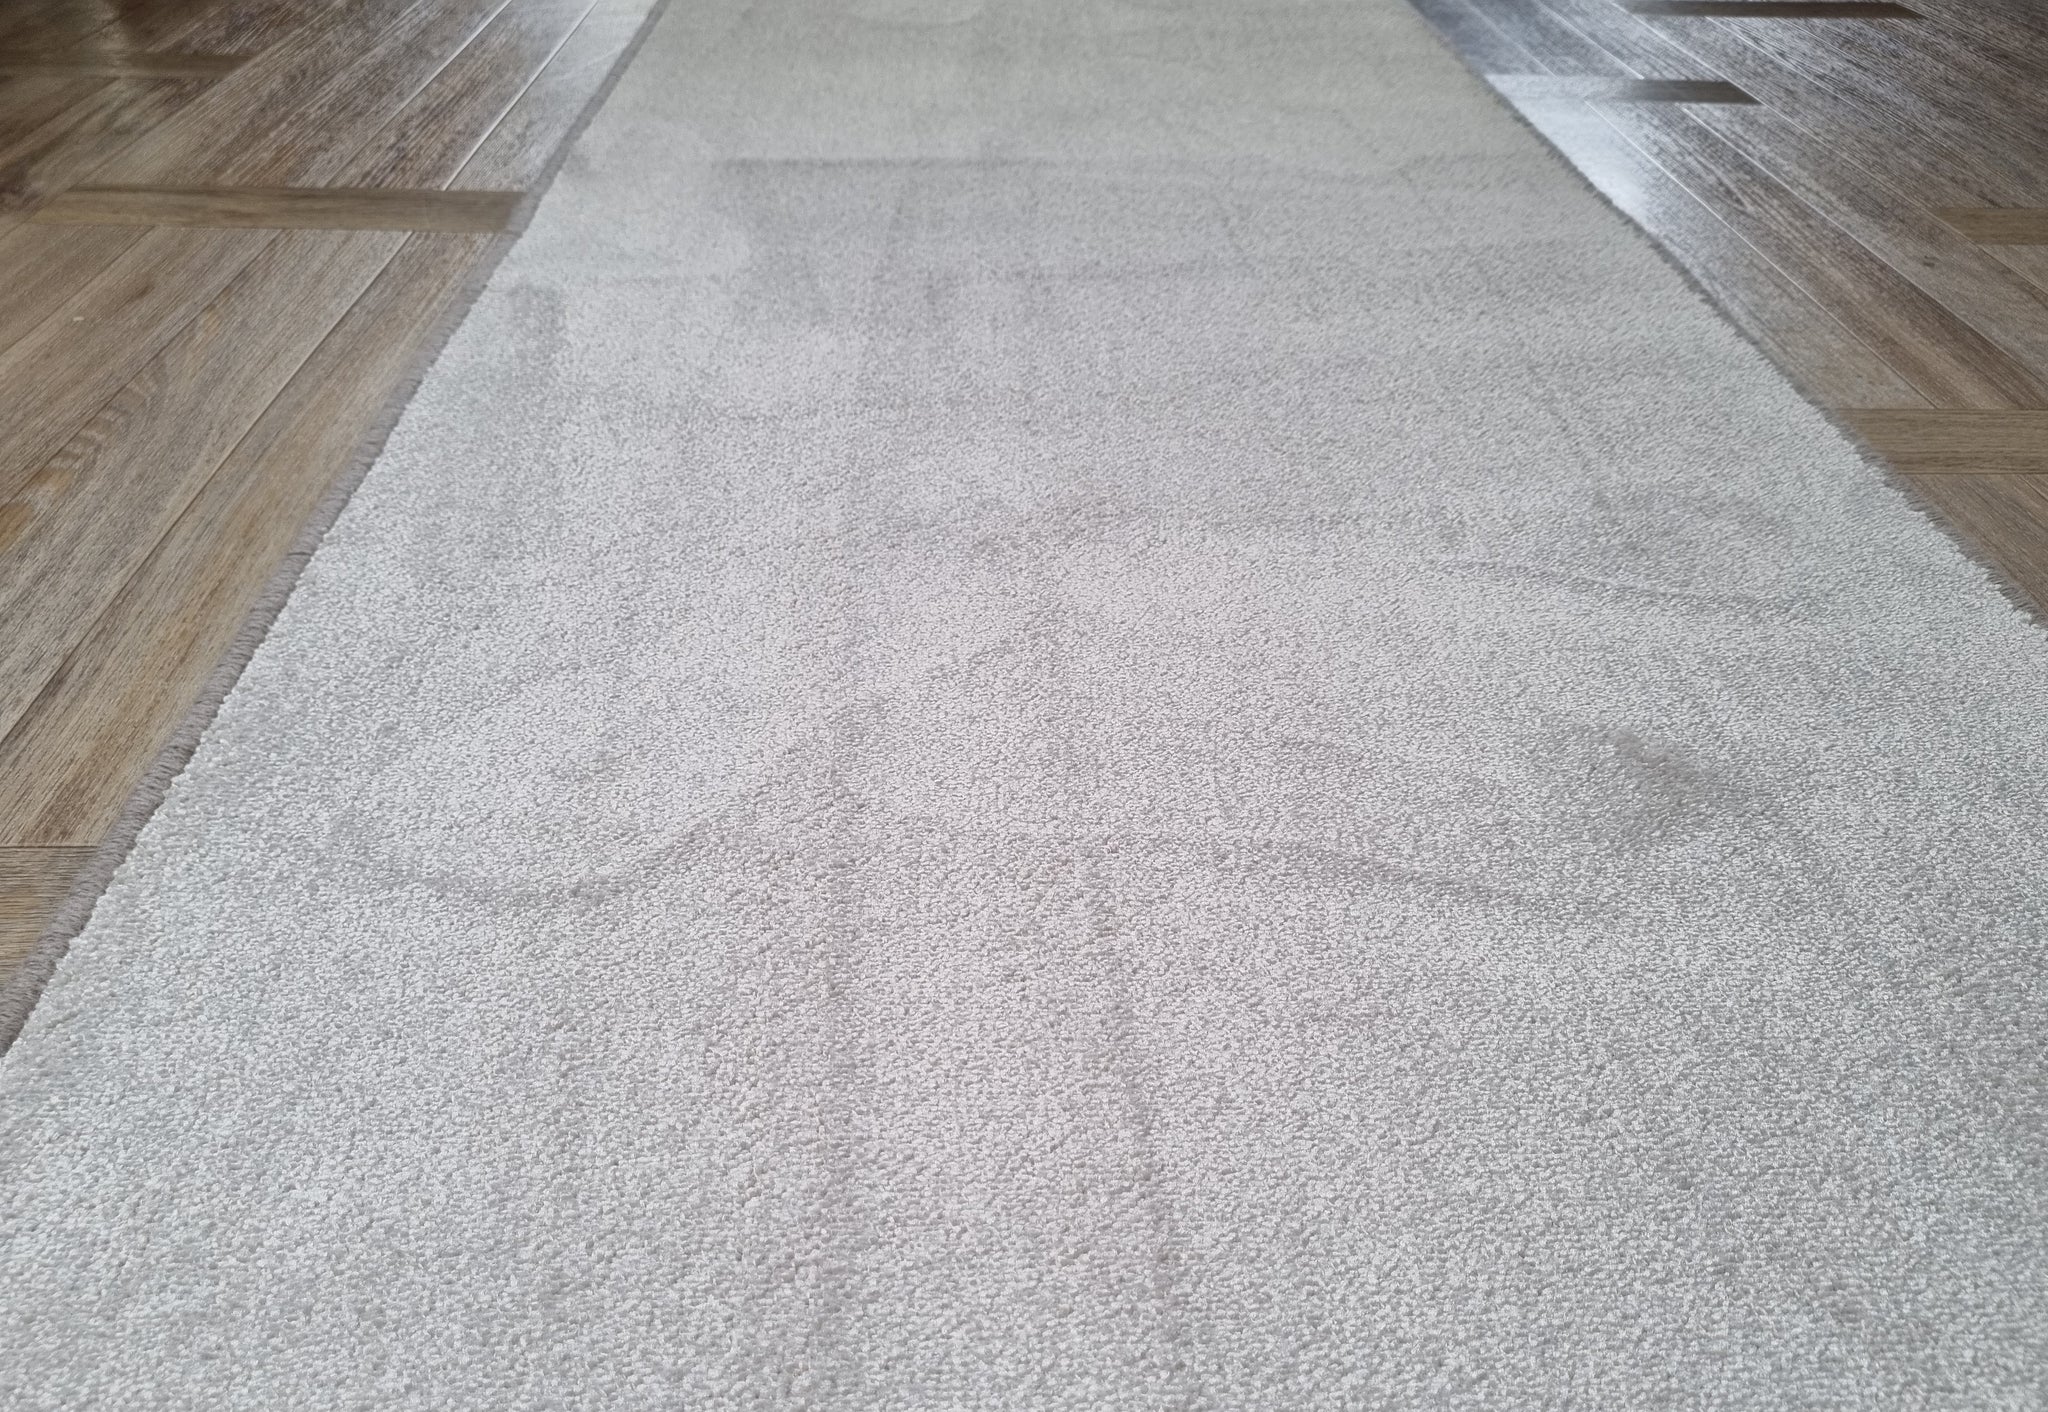 Nylon carpet floor, landing hallway and floor runner rug with whipped border